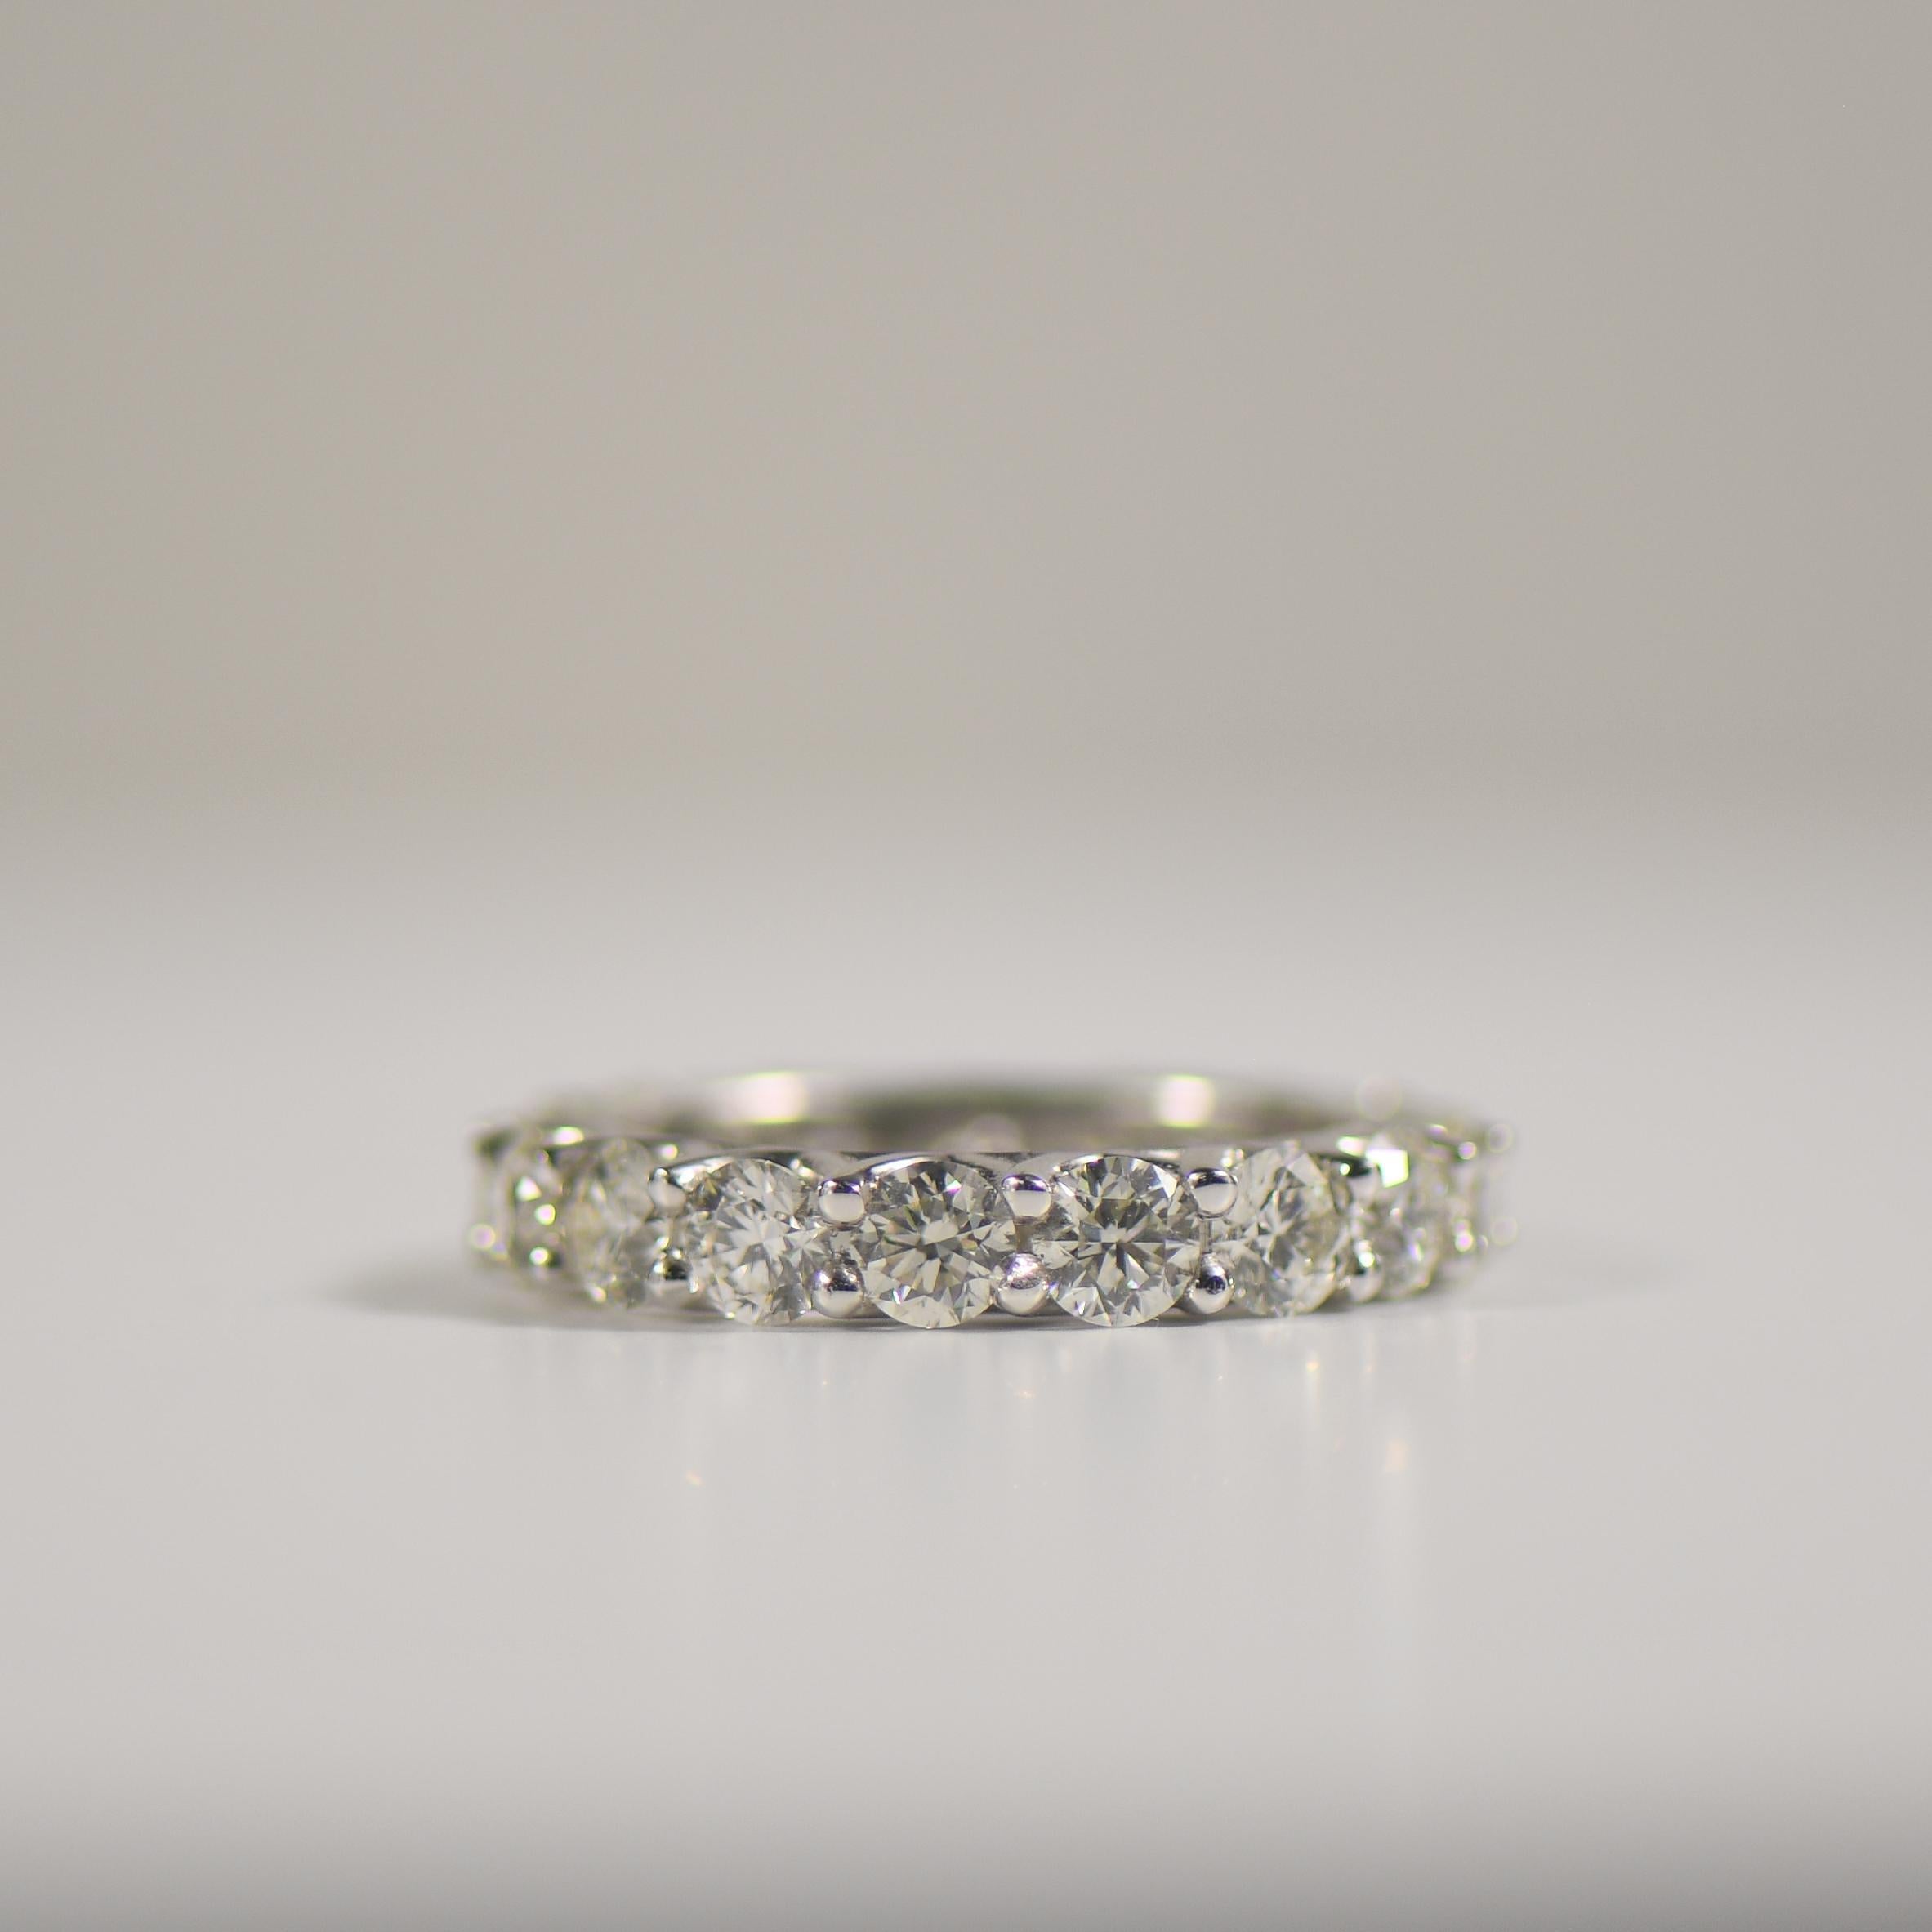 Erhöhen Sie Ihren Stil mit unserem bezaubernden Eternity Diamond Band, einem Symbol für ewige Liebe und Raffinesse. Dieses zeitlose Schmuckstück aus glänzendem 18-karätigem Weißgold besteht aus ca. 4,50 Karat schillernden Diamanten, die sorgfältig